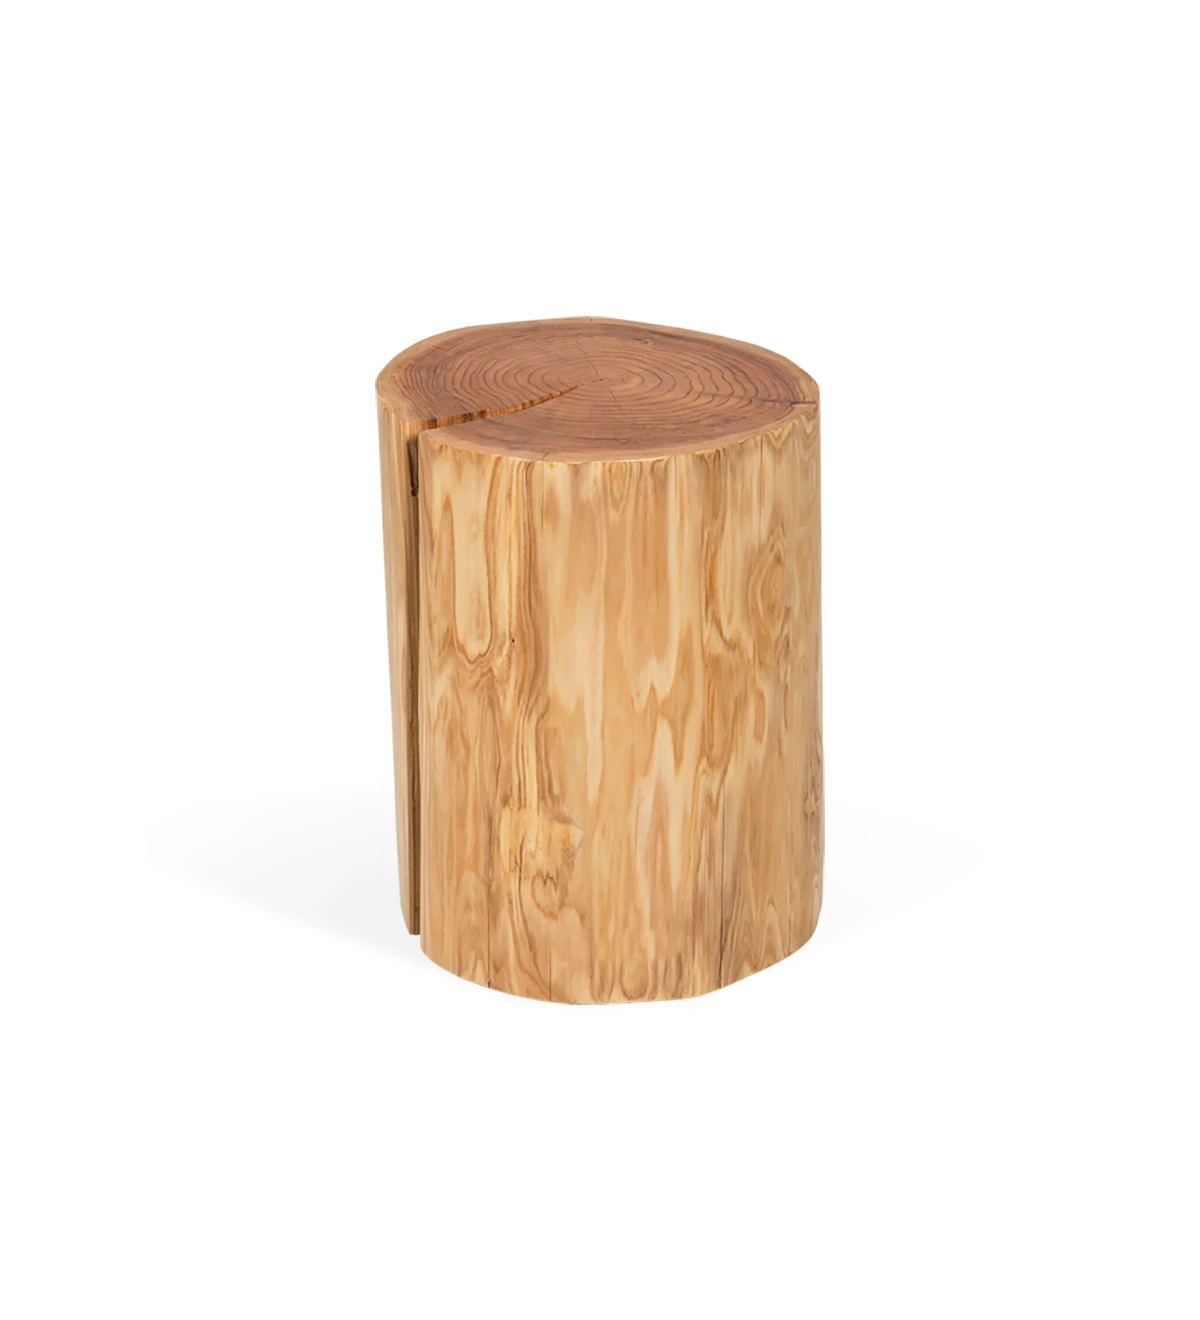 Mesa de apoio tronco em madeira natural de criptoméria.